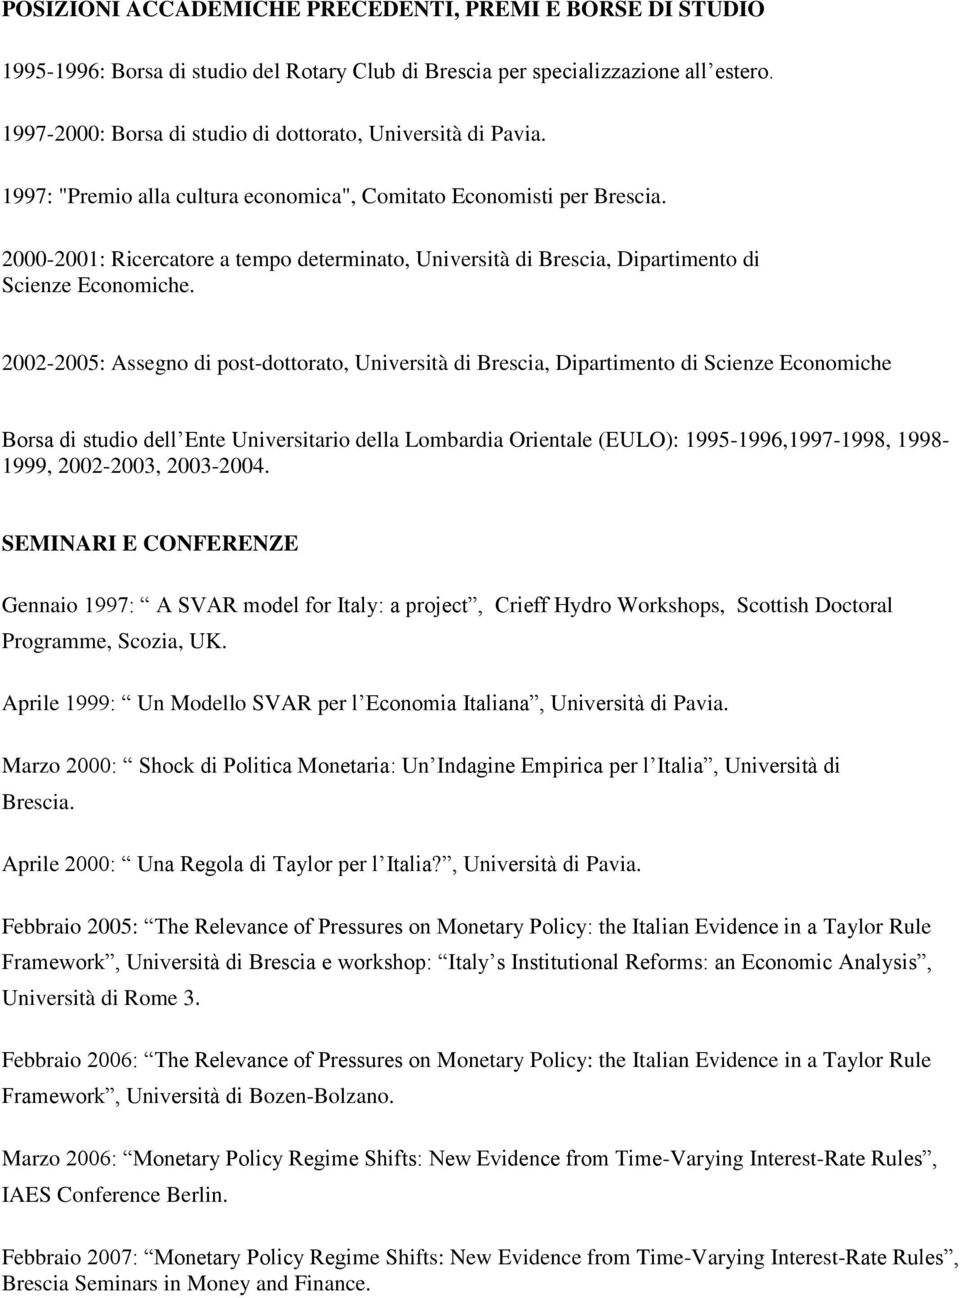 2000-2001: Ricercatore a tempo determinato, Università di Brescia, Dipartimento di Scienze Economiche.